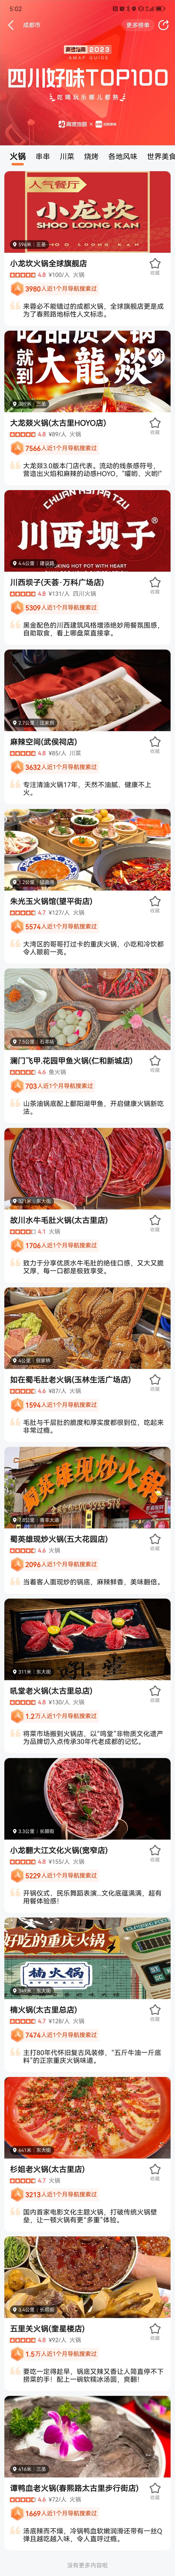 成都美食排行榜_解锁最地道的四川美食成都人最爱吃的100家店都在这里!